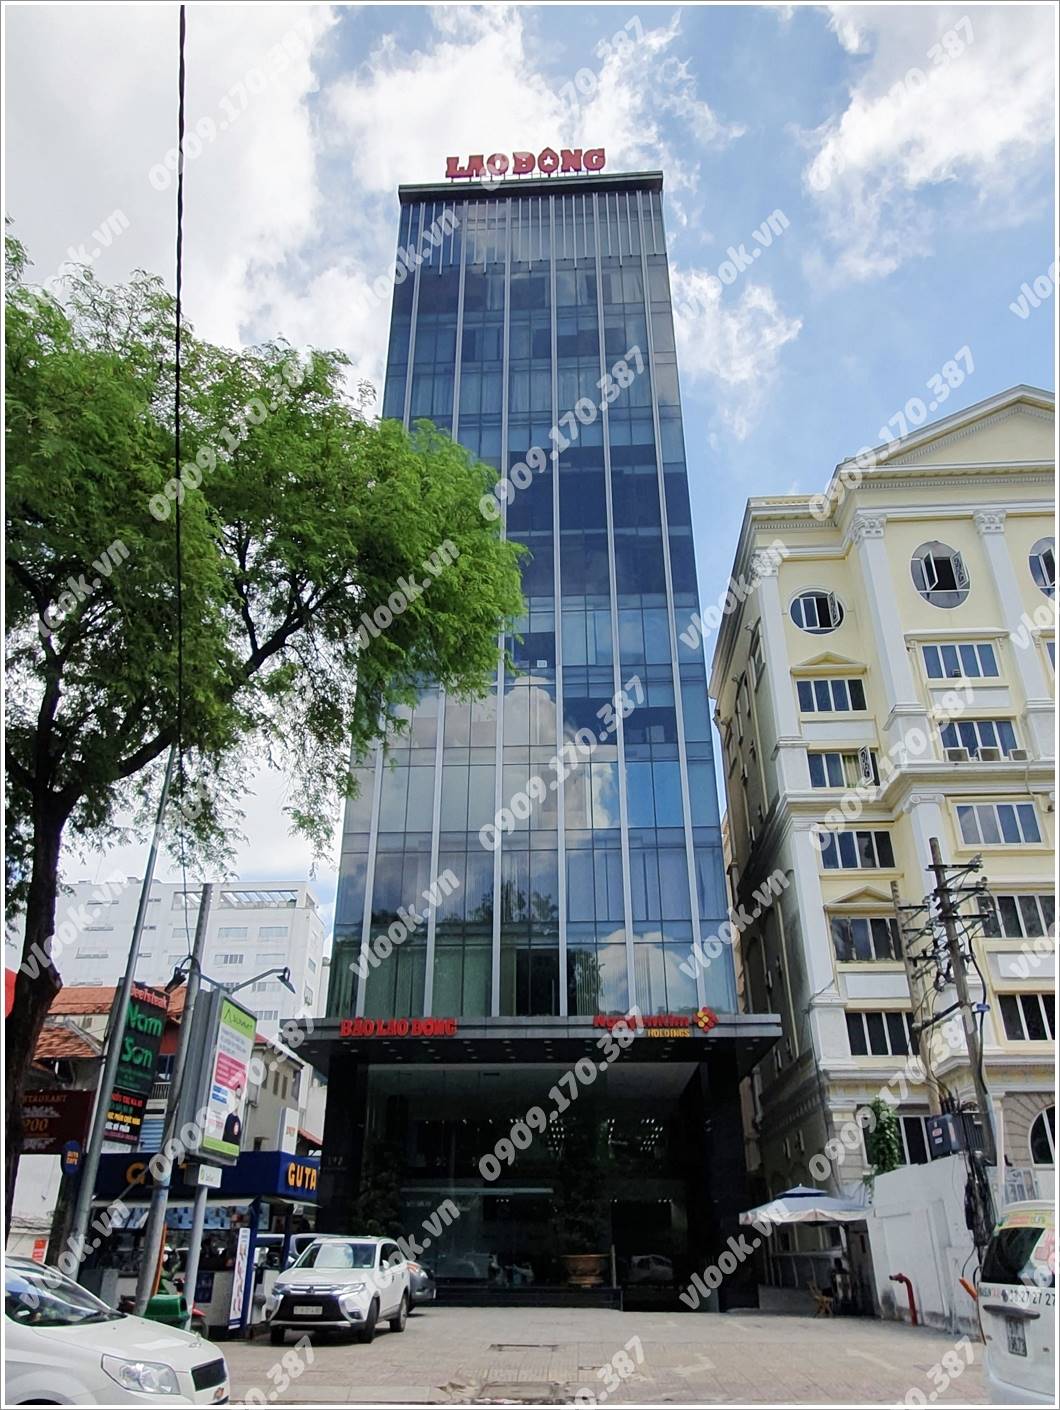 Cao ốc cho thuê văn phòng Báo Lao Động Building, Nguyễn Thị Minh Khai, Quận 3, TPHCM - vlook.vn